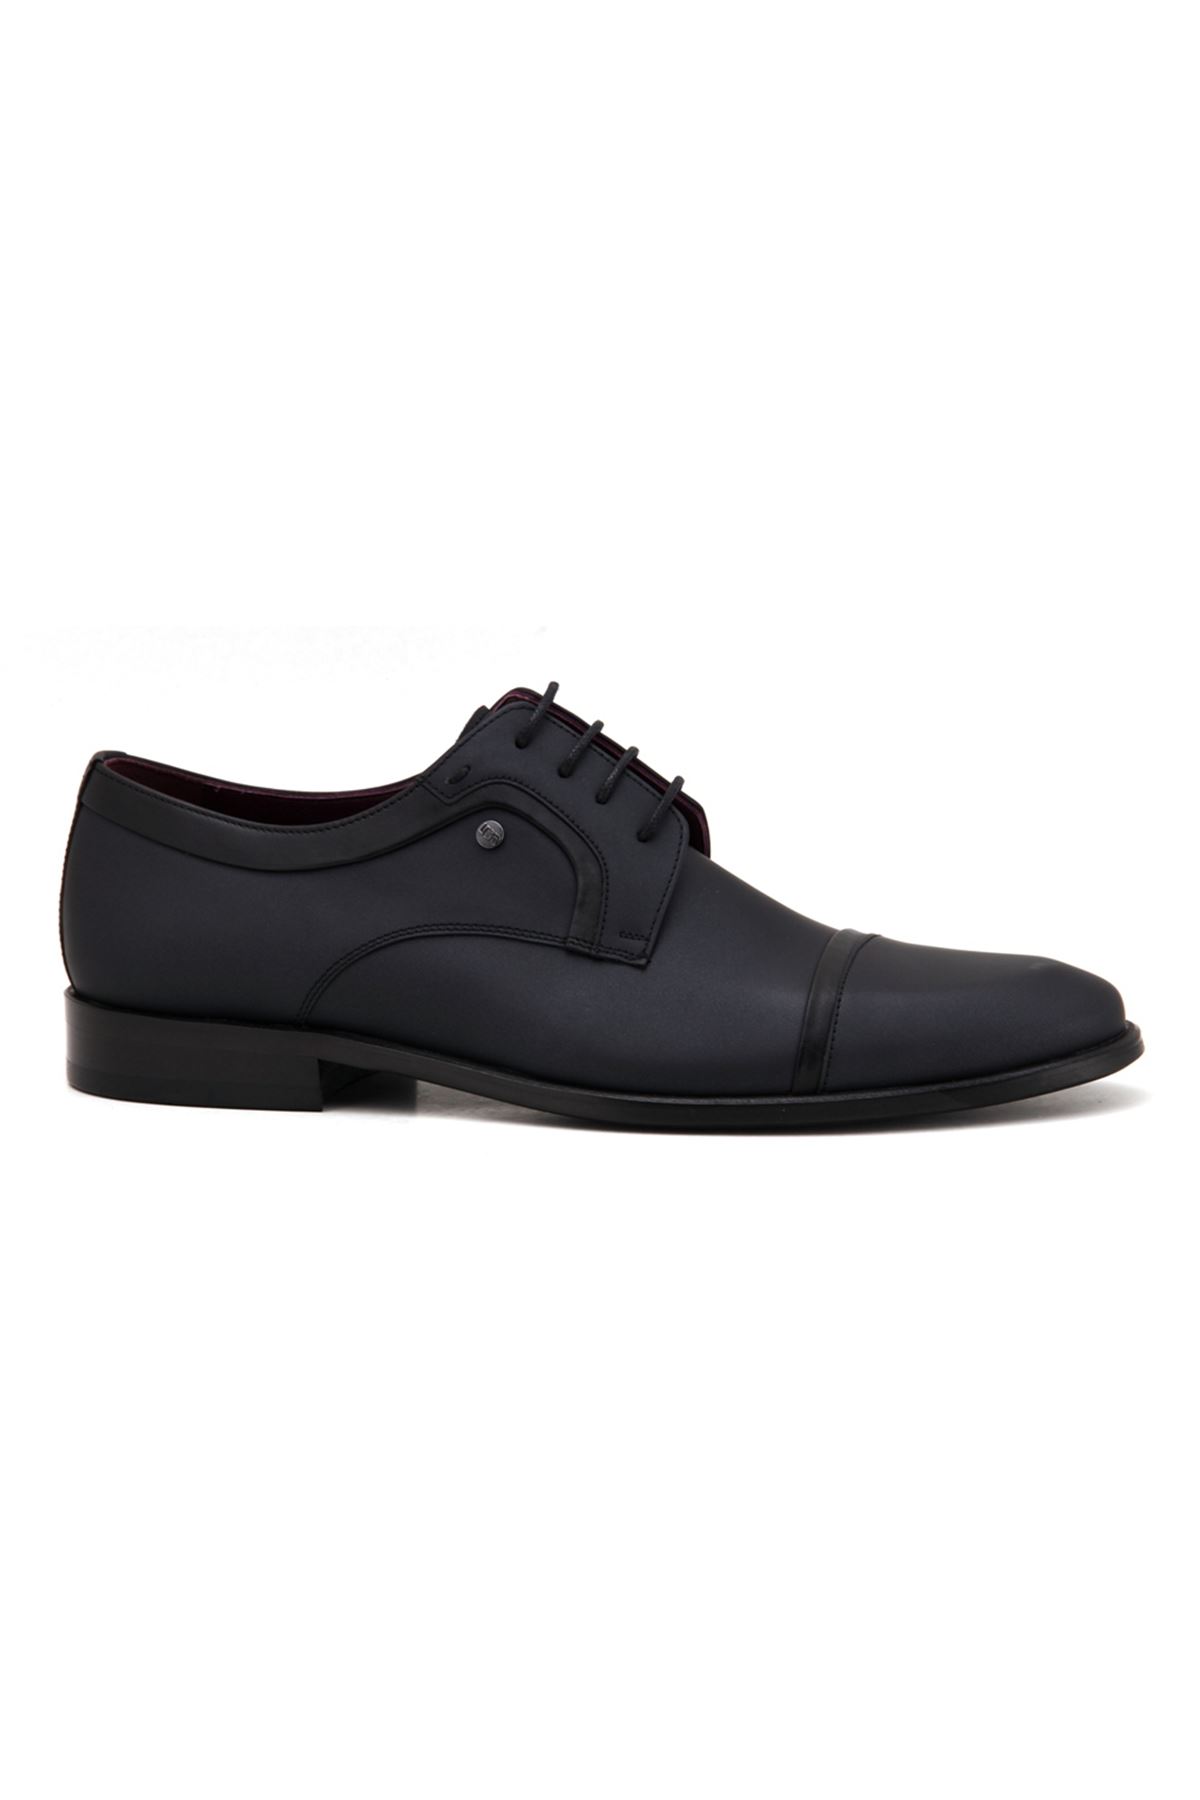 3124 Libero Klasik Erkek Ayakkabı - Siyah Sedef